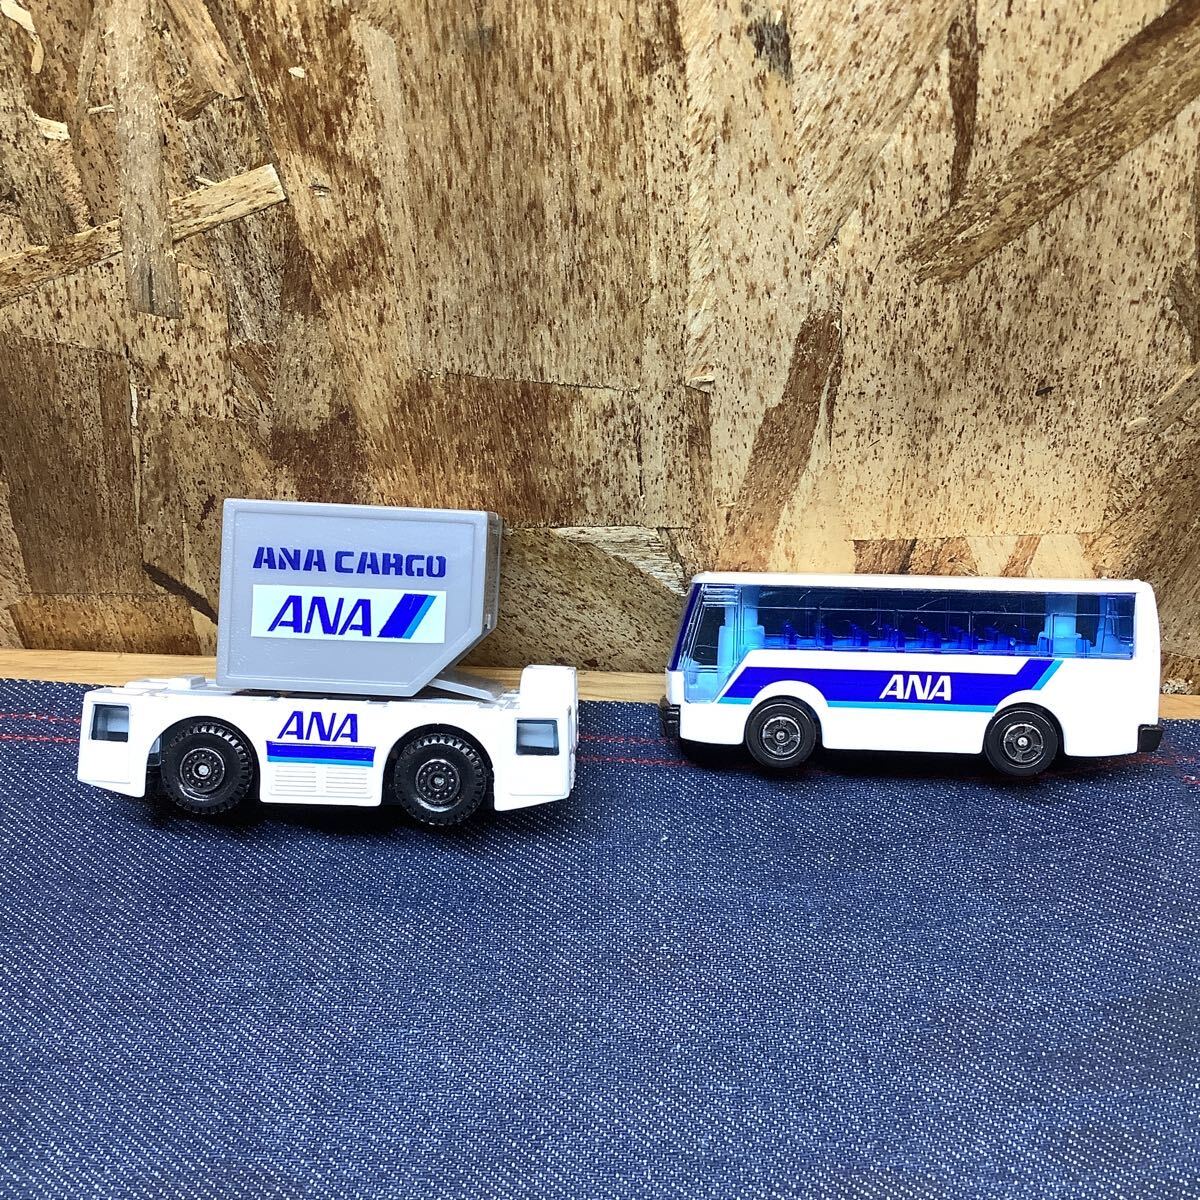 送料無料【Sて1342】ANA 空港セットANA アナ ダイキャスト エアポートセット エアバス おもちゃ模型の画像5